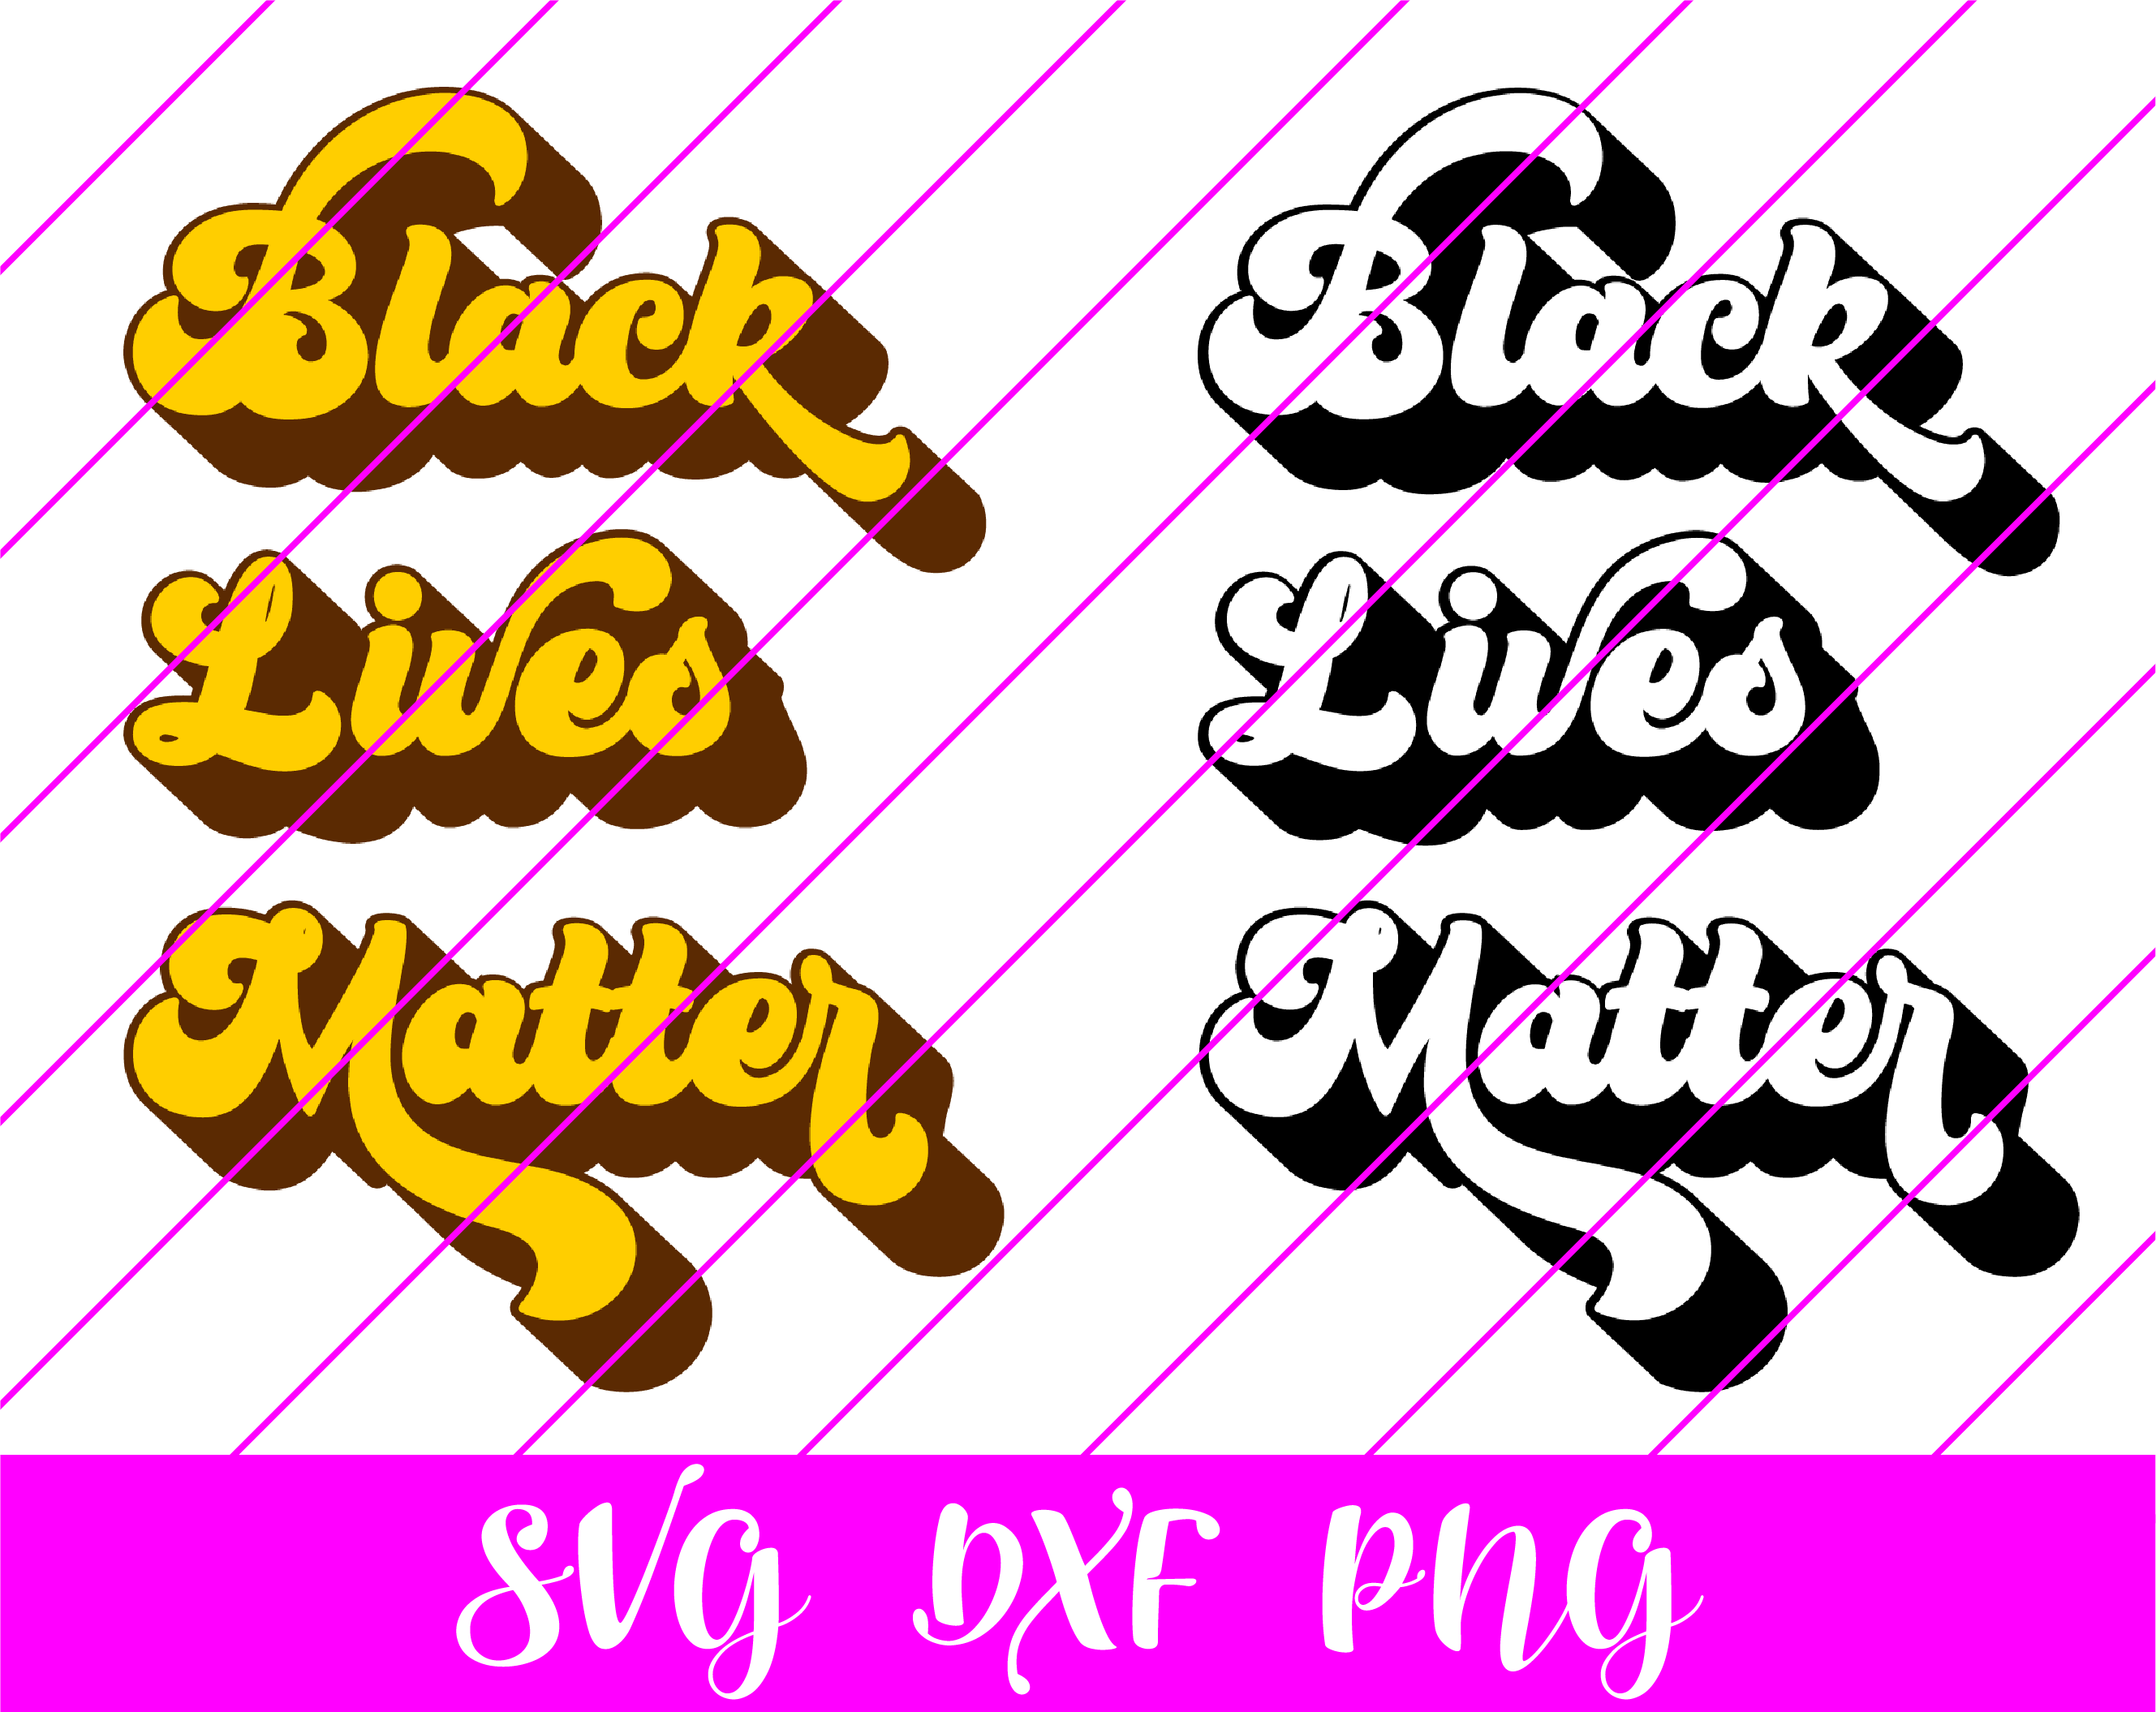 black lives matter-01-01-01